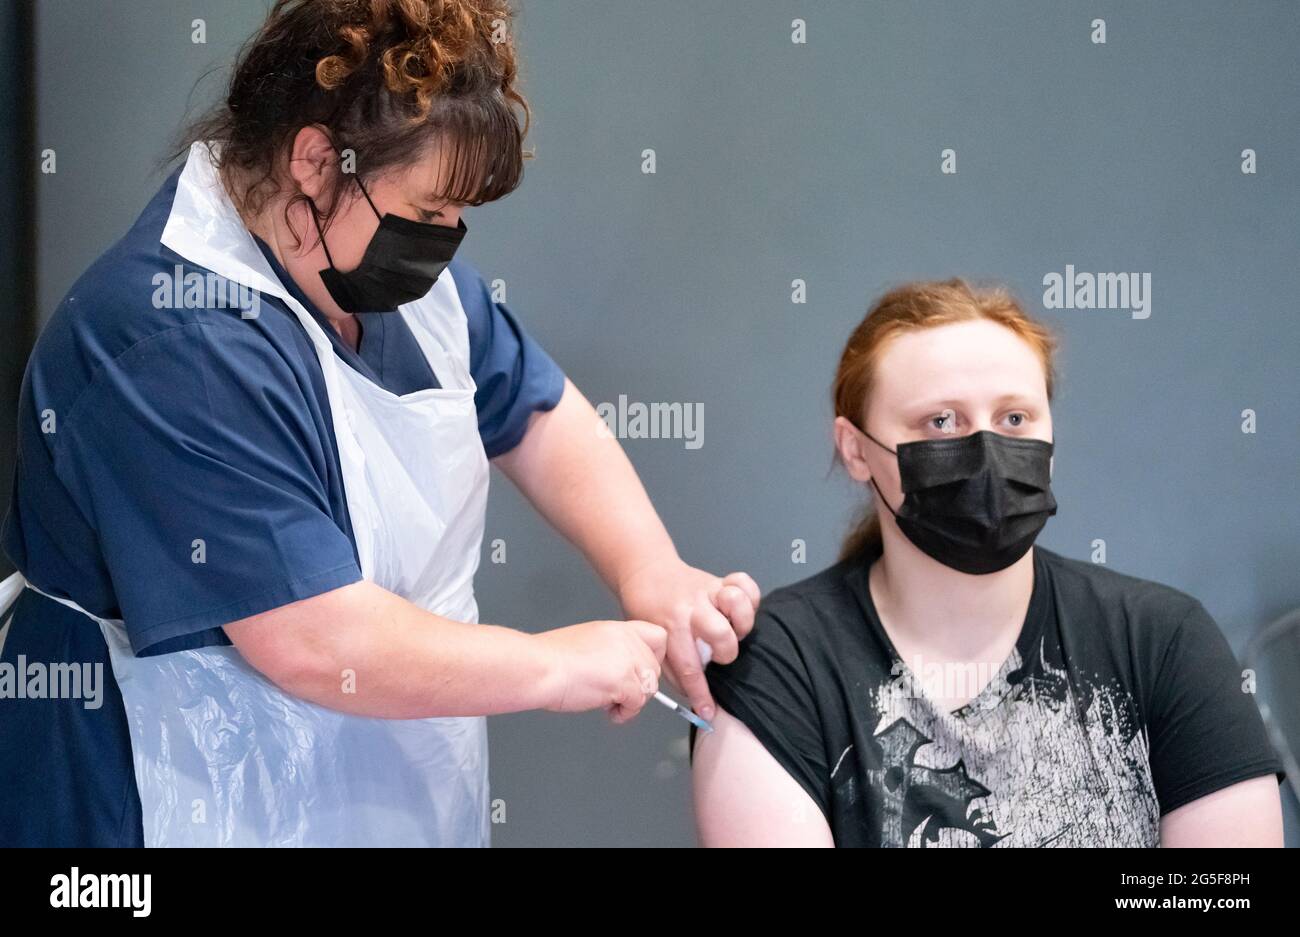 La enfermera Maria Simon (izquierda) vacuna a Sophie Beardsley (derecha) con la vacuna Pfizer Covid-19, en un centro de vacunación contra el coronavirus masivo en el Adwick Leisure Centre, en Doncaster, mientras continúa la campaña de vacunación 'Grab a jab' del NHS en Inglaterra. Fecha de la foto: Domingo 27 de junio de 2021. Foto de stock